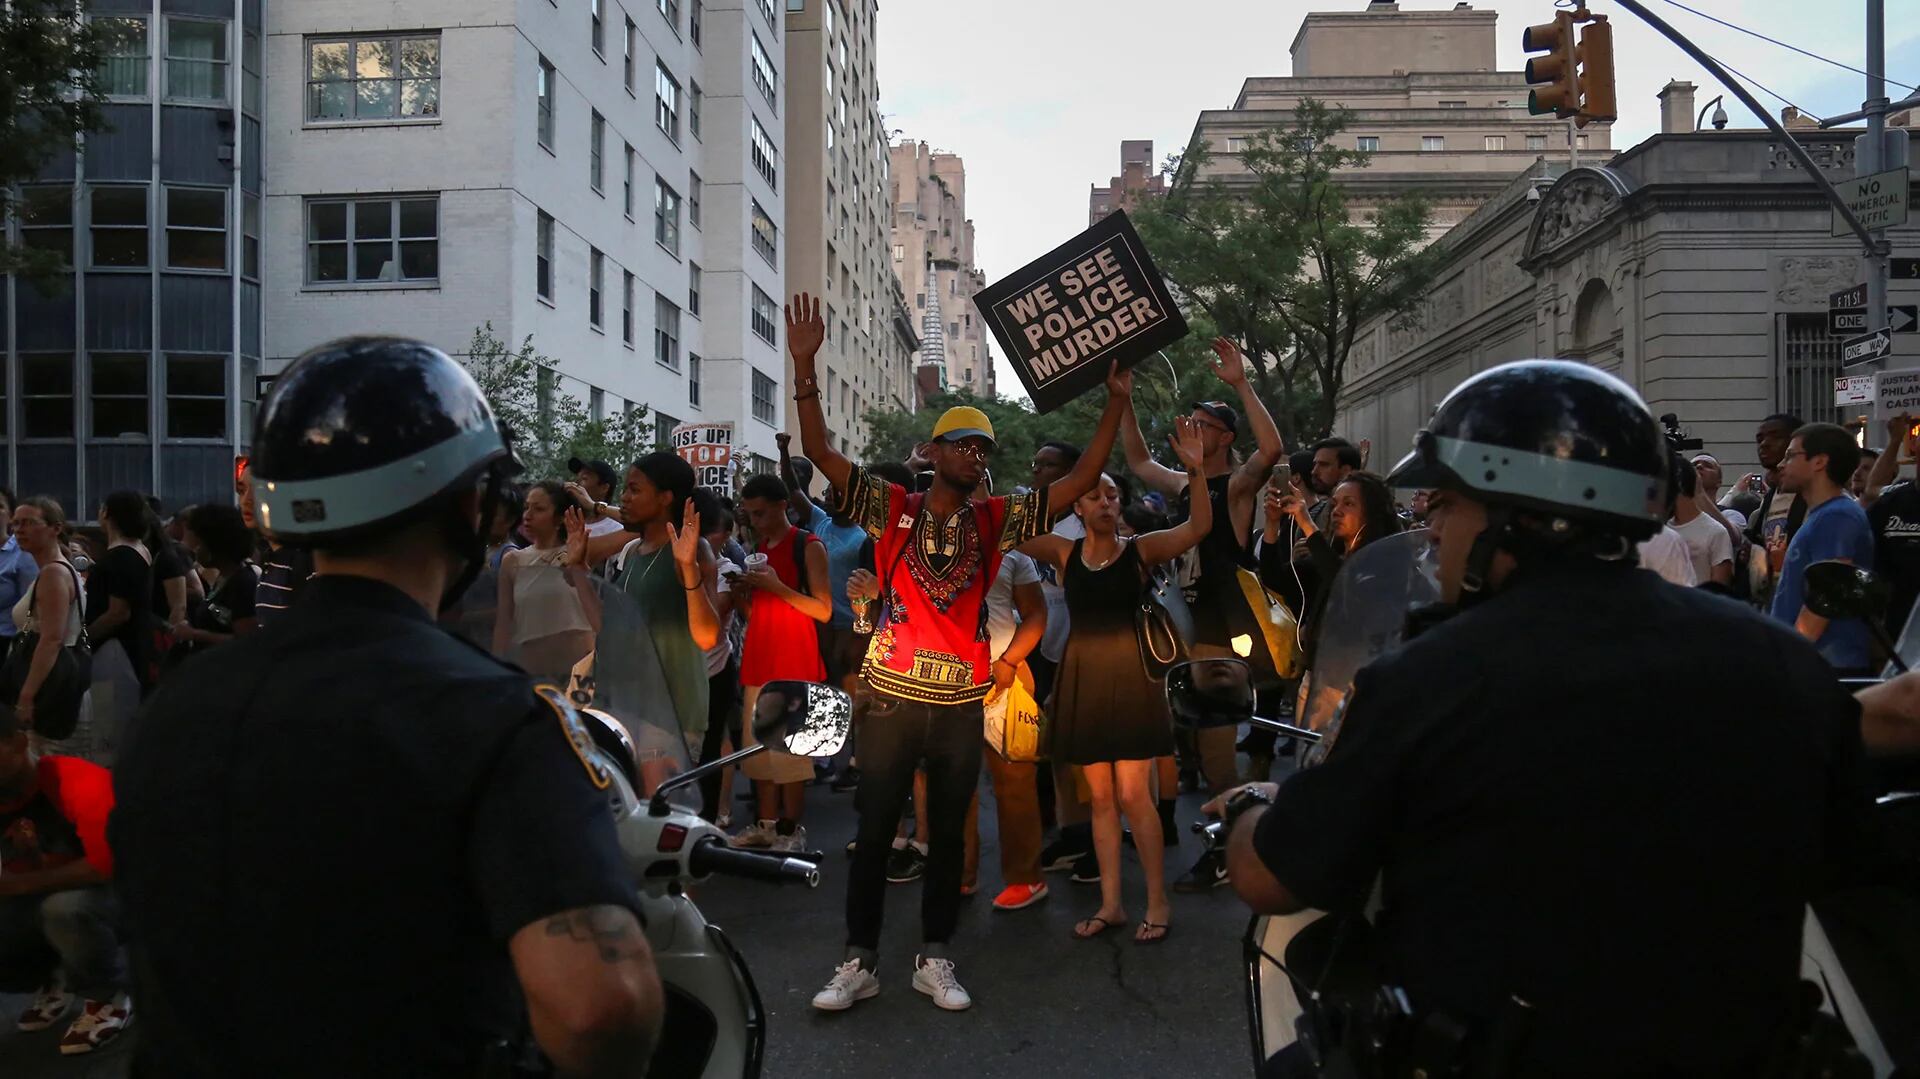 Los manifestantes repudiaron las muertes de Alton Sterling y Philando Castile. Luego estalló la locura (Reuters)